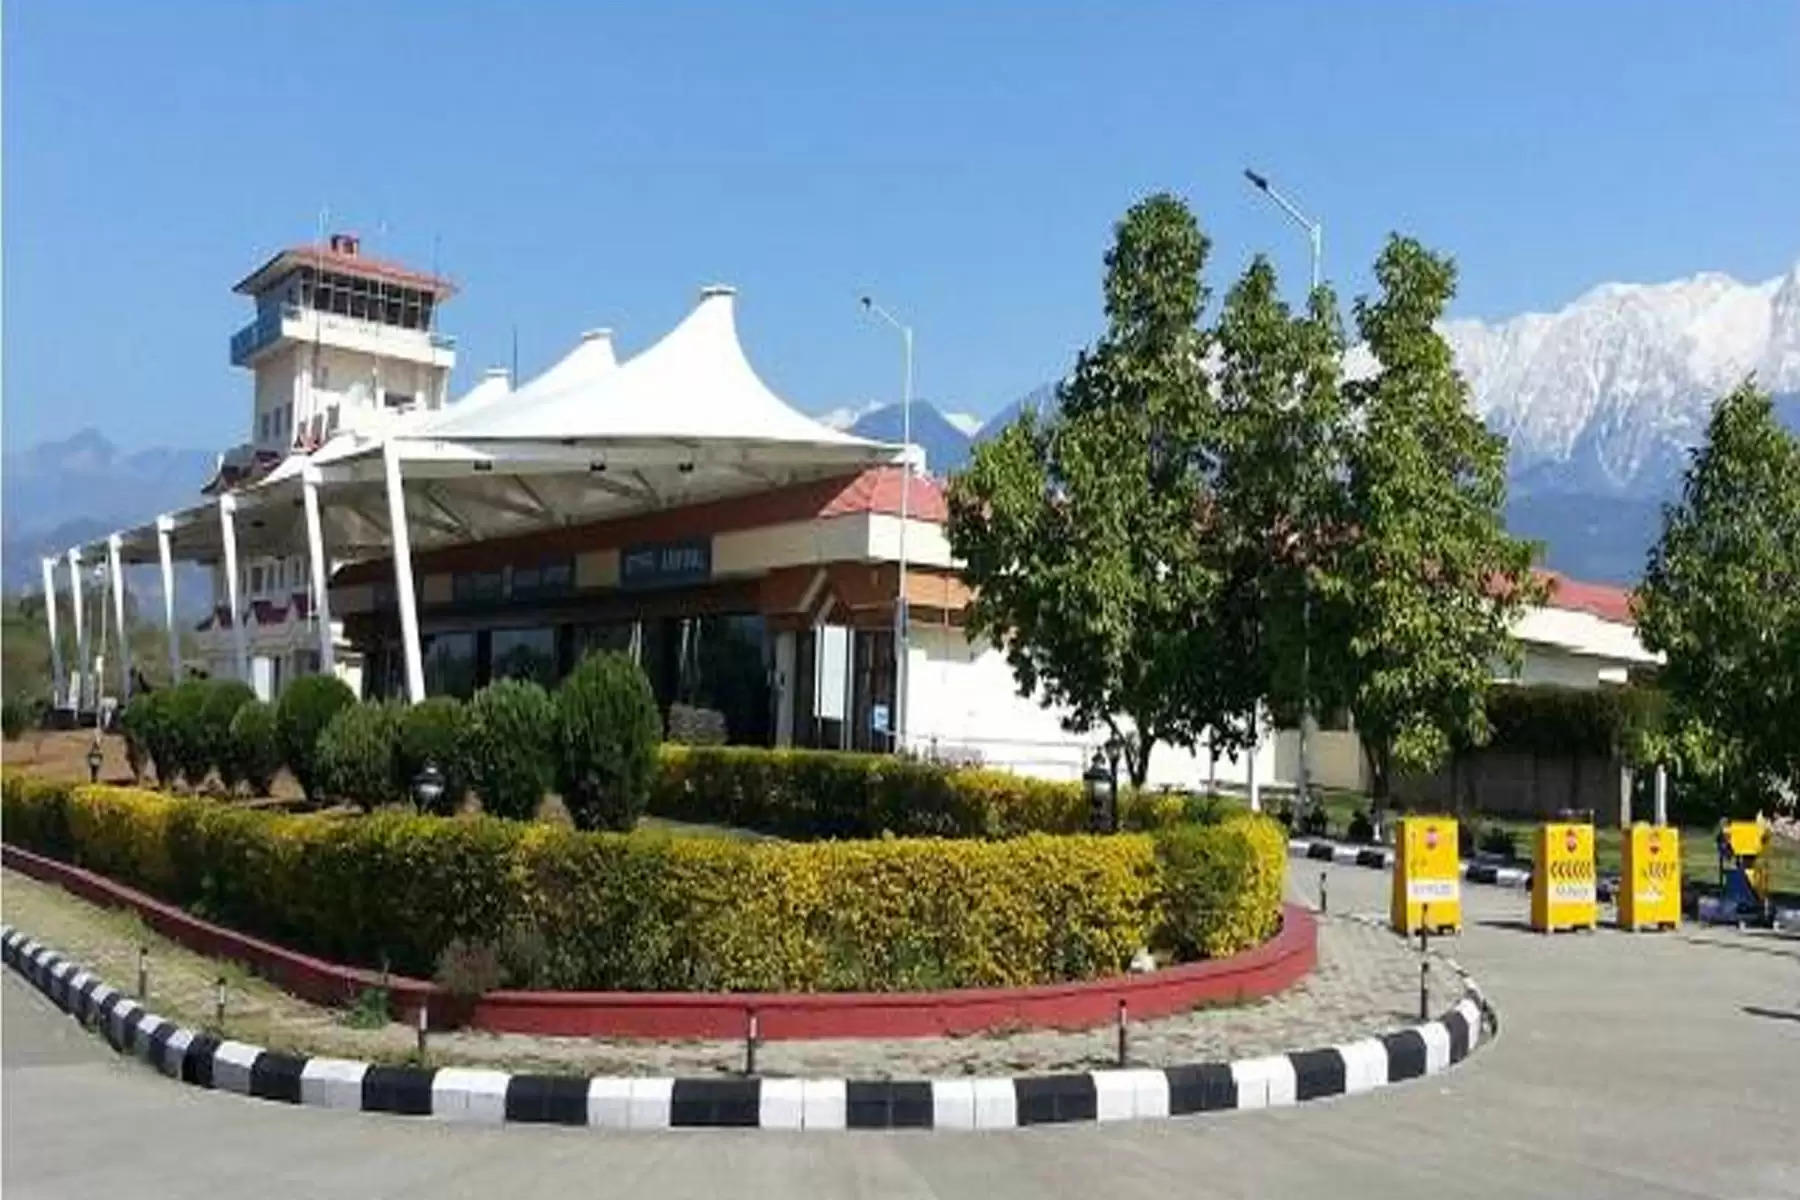 हिमाचल प्रदेश के गगल स्थित कांगड़ा एयरपोर्ट (Kangra Airport) के विस्तार की कवायद शुरू हो गई है। इसके लिए भारतीय विमानन प्राधिकरण, केंद्रीय जल और विद्युत अनुसंधान केंद्र (CWPRS) पुणे के विशेषज्ञों की सेवाएं लेगा। CWPRS की टीम मंगलवार को धर्मशाला पहुंच गई थी। अब टीम आगामी तीन दिन तक कांगड़ा एयरपोर्ट (Kangra Airport) के विस्तार के मुख्य बिंदुओं का अध्ययन करेगी।